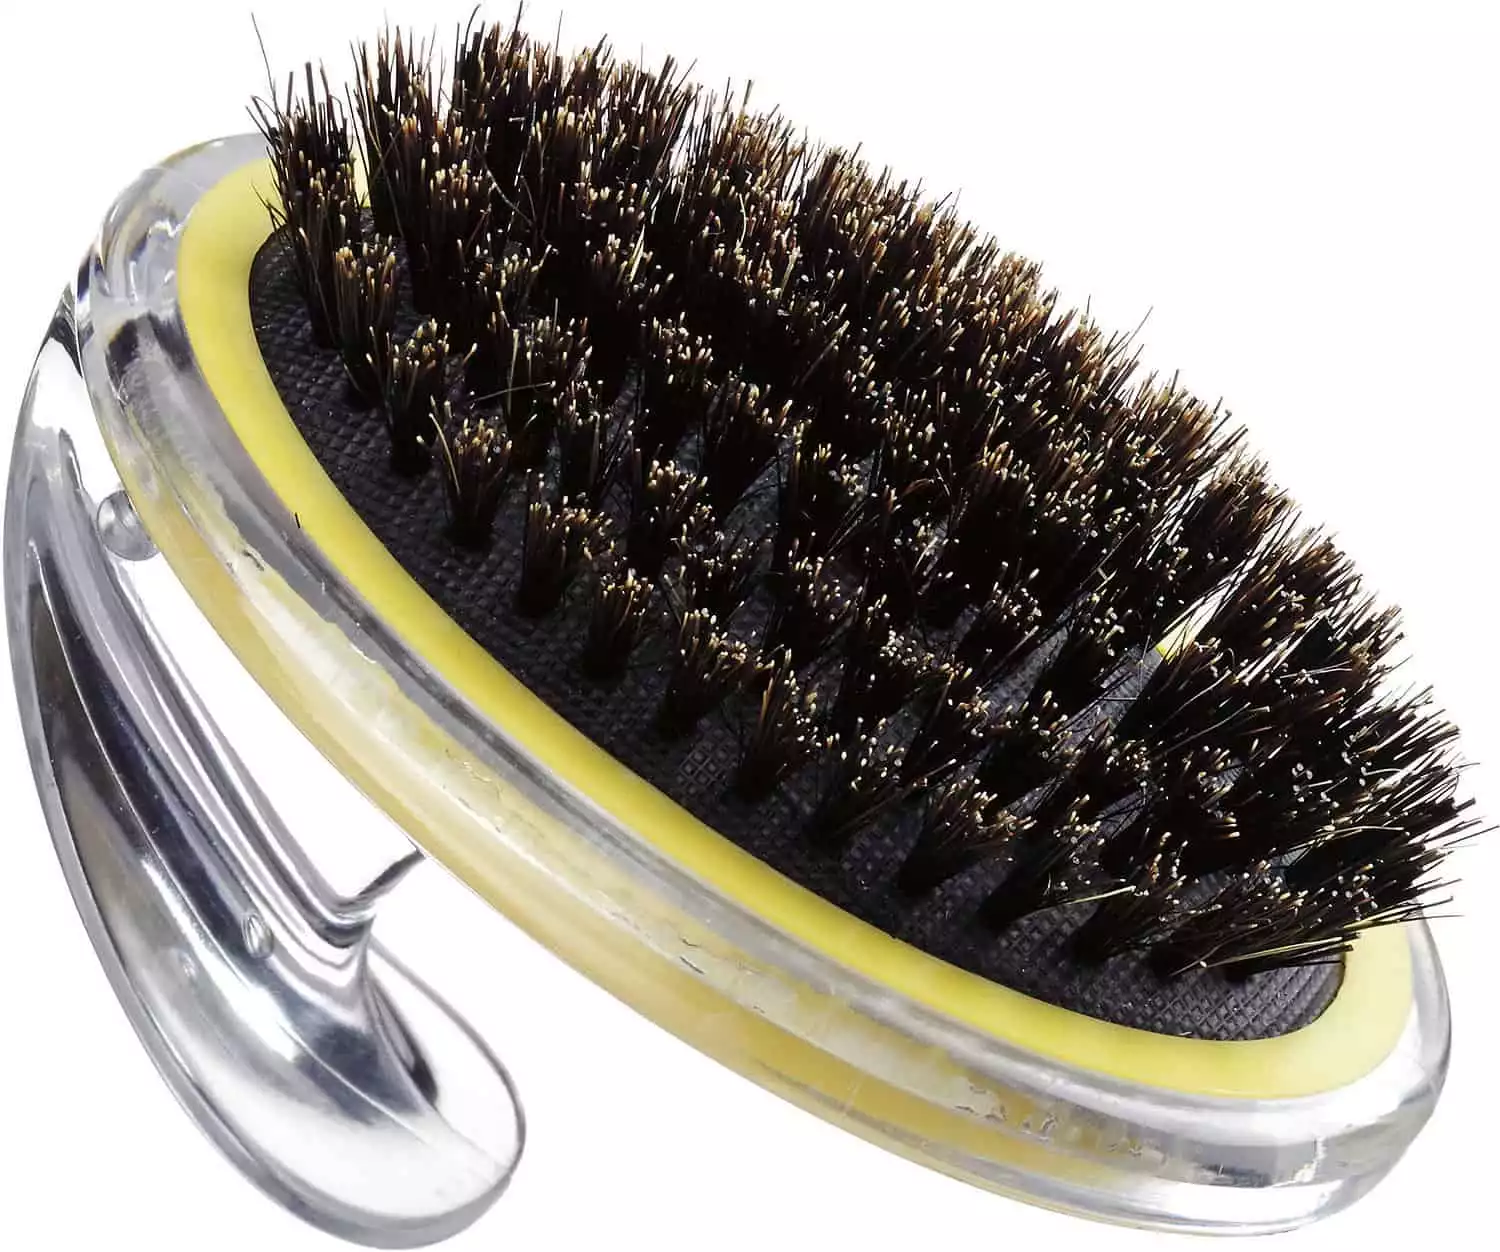 ConairPRO Pet-It Bristle Brush